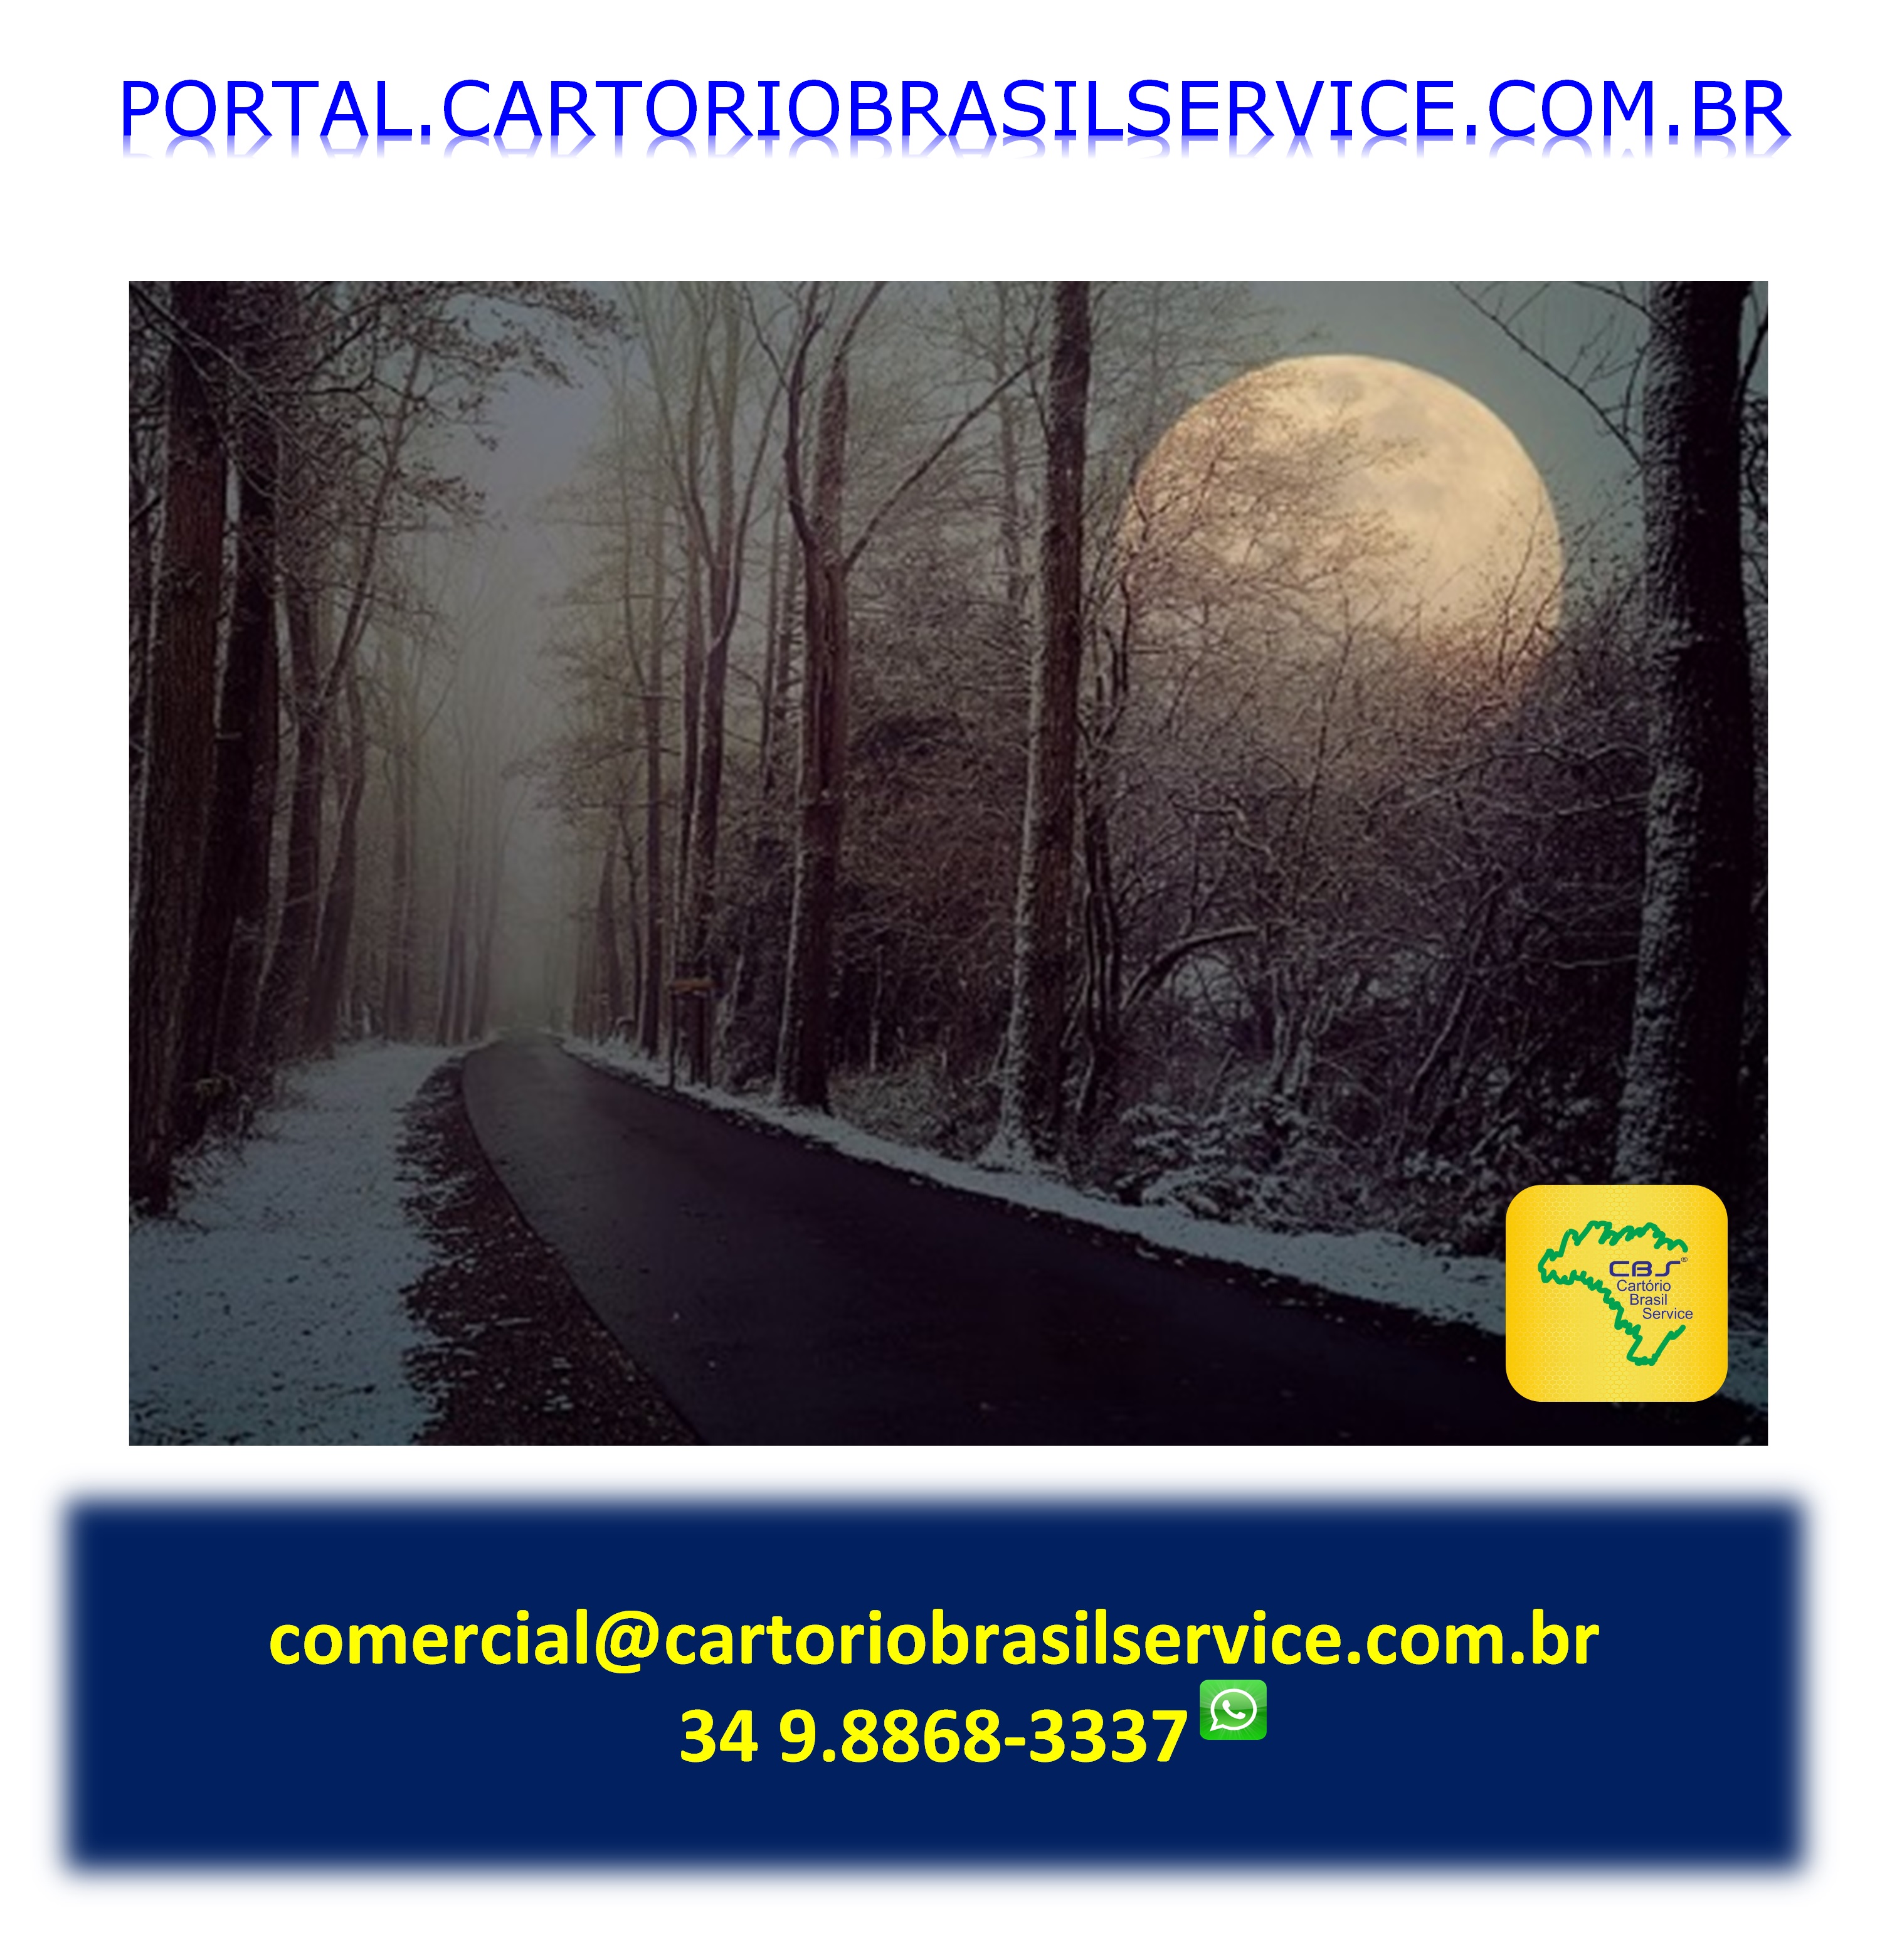 Cartorio BRASIL SERVICE POSTAL